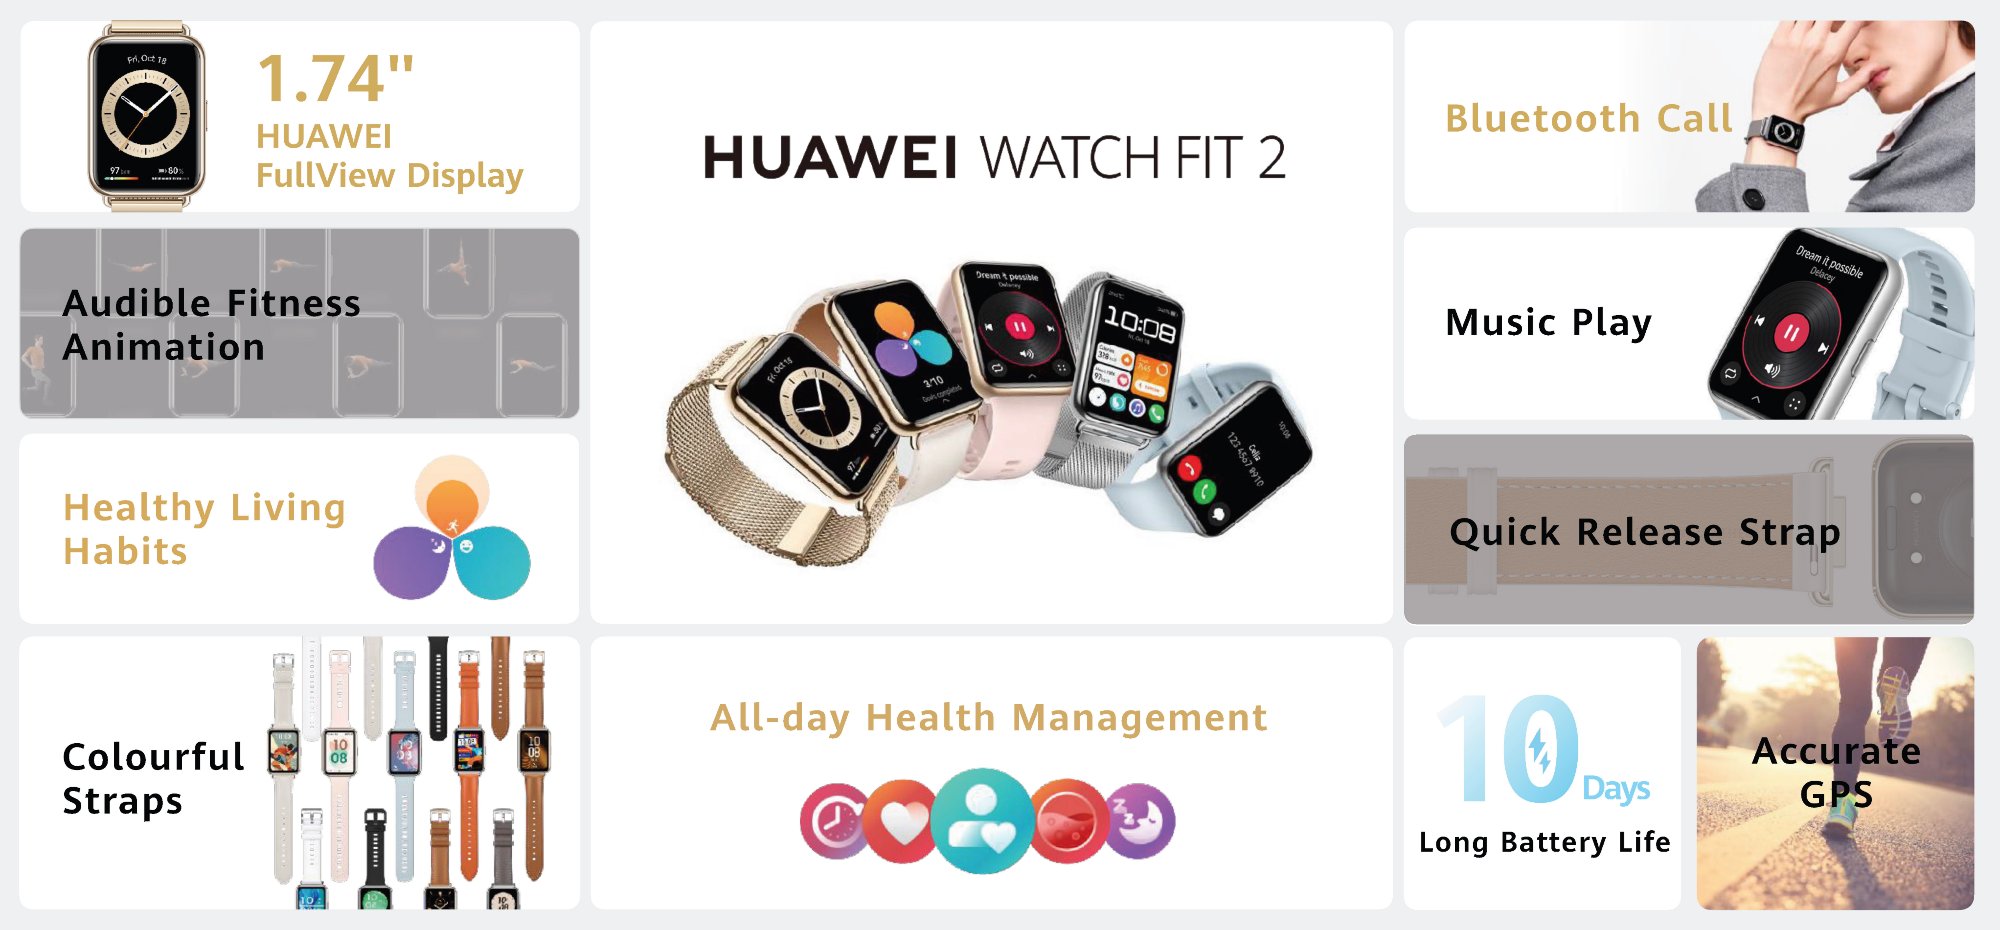 HUAWEI Watch Fit 2 kini di Malaysia pada harga RM 599 10